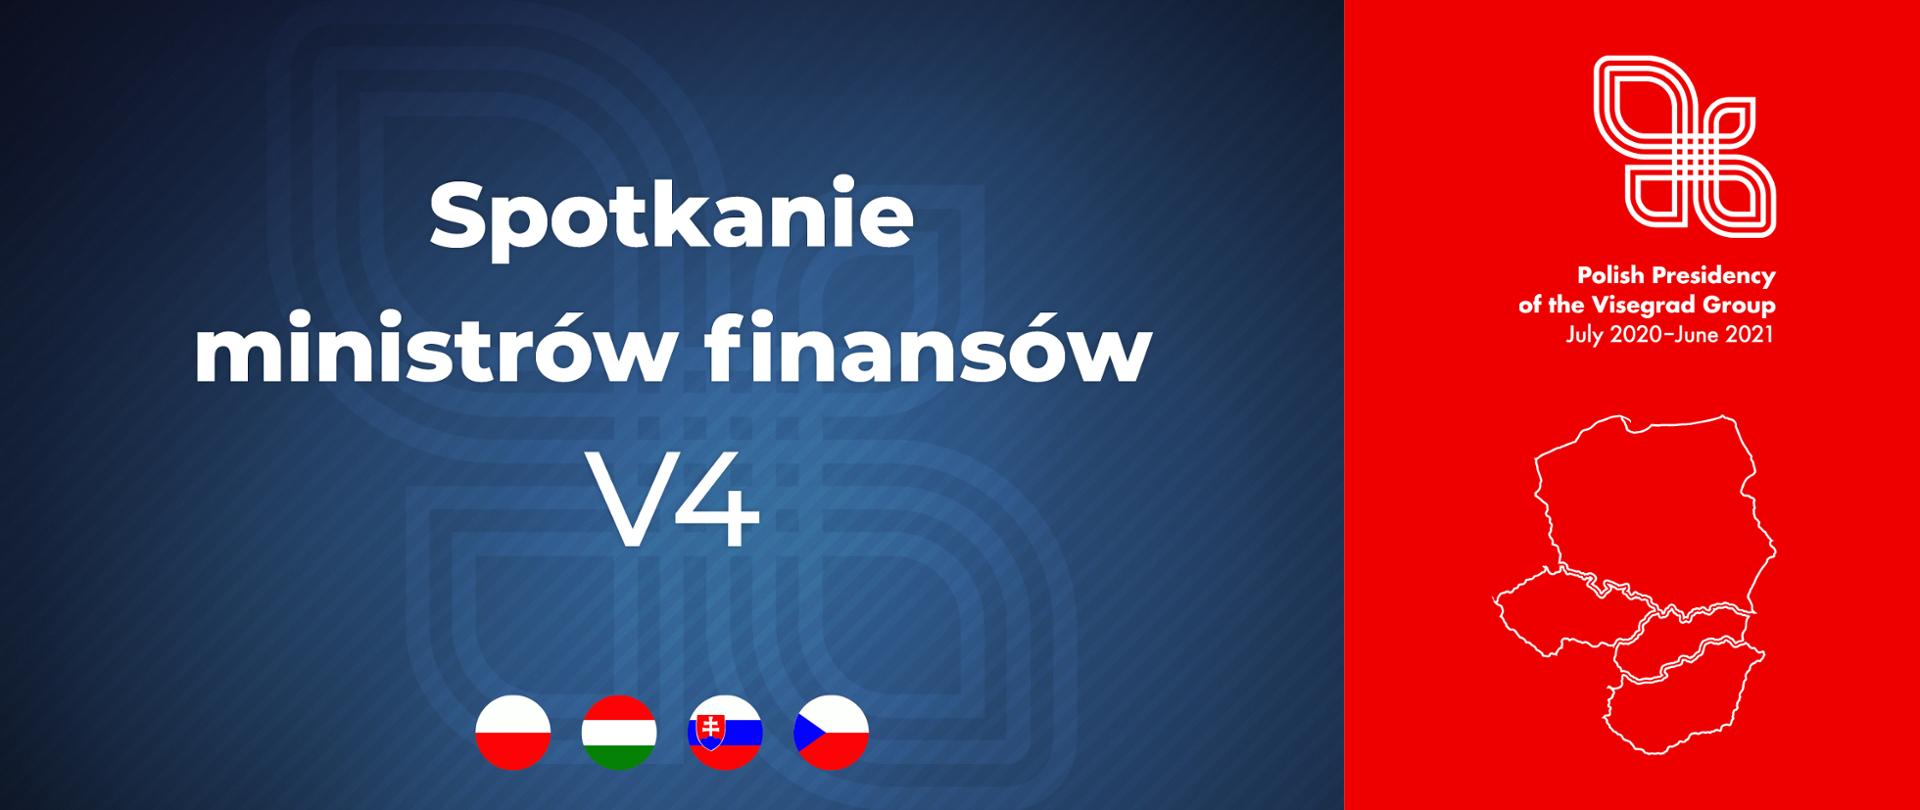 Napis spotkanie ministrów finansów V4 i Polish Presidency of the Visegrad Group